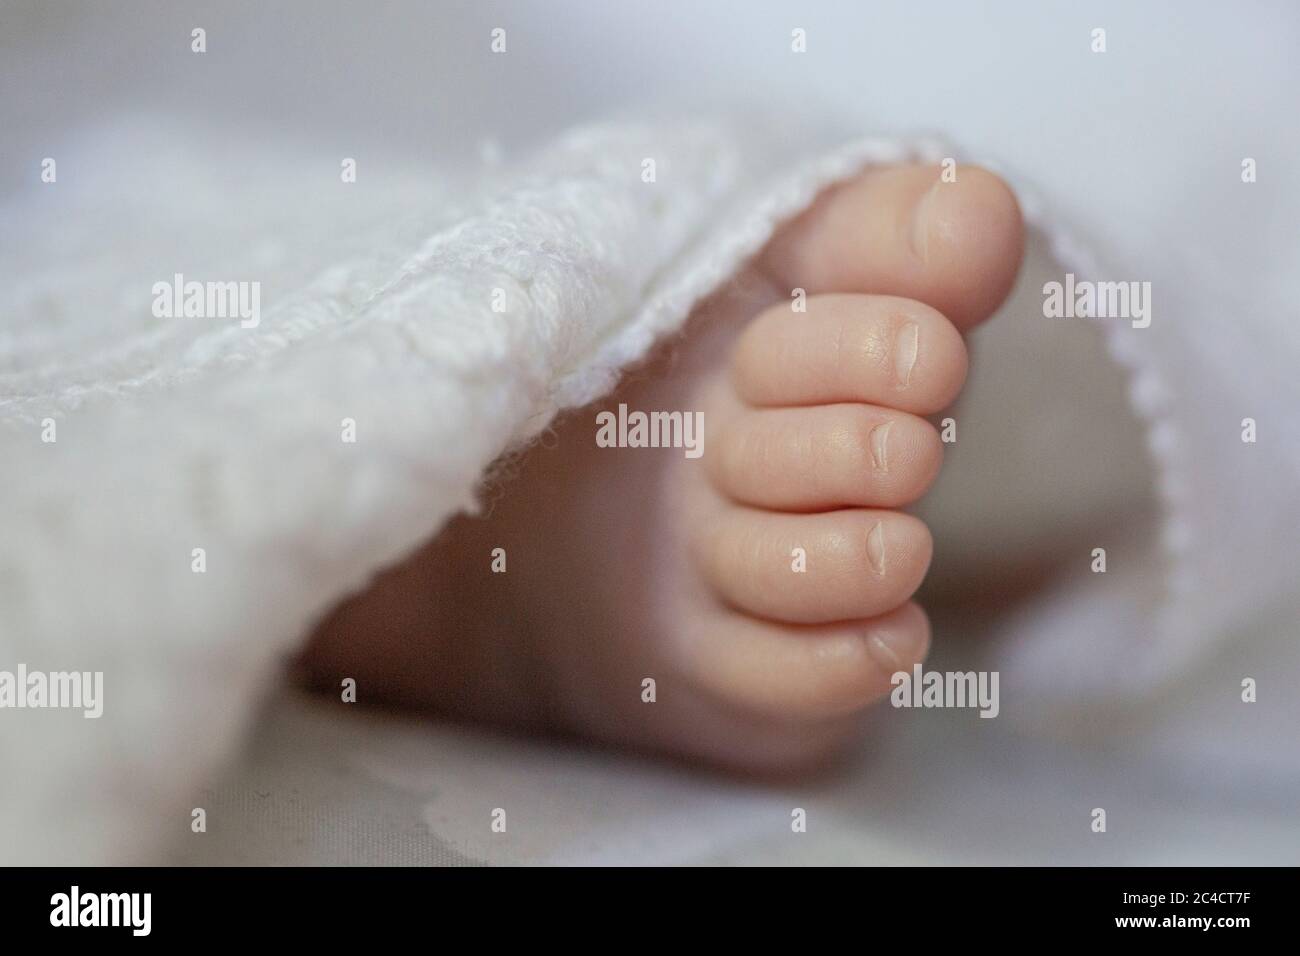 Primo piano di un piede destro di un bambino neonato che appare da una coperta bianca. Foto di Sam Mellish Foto Stock